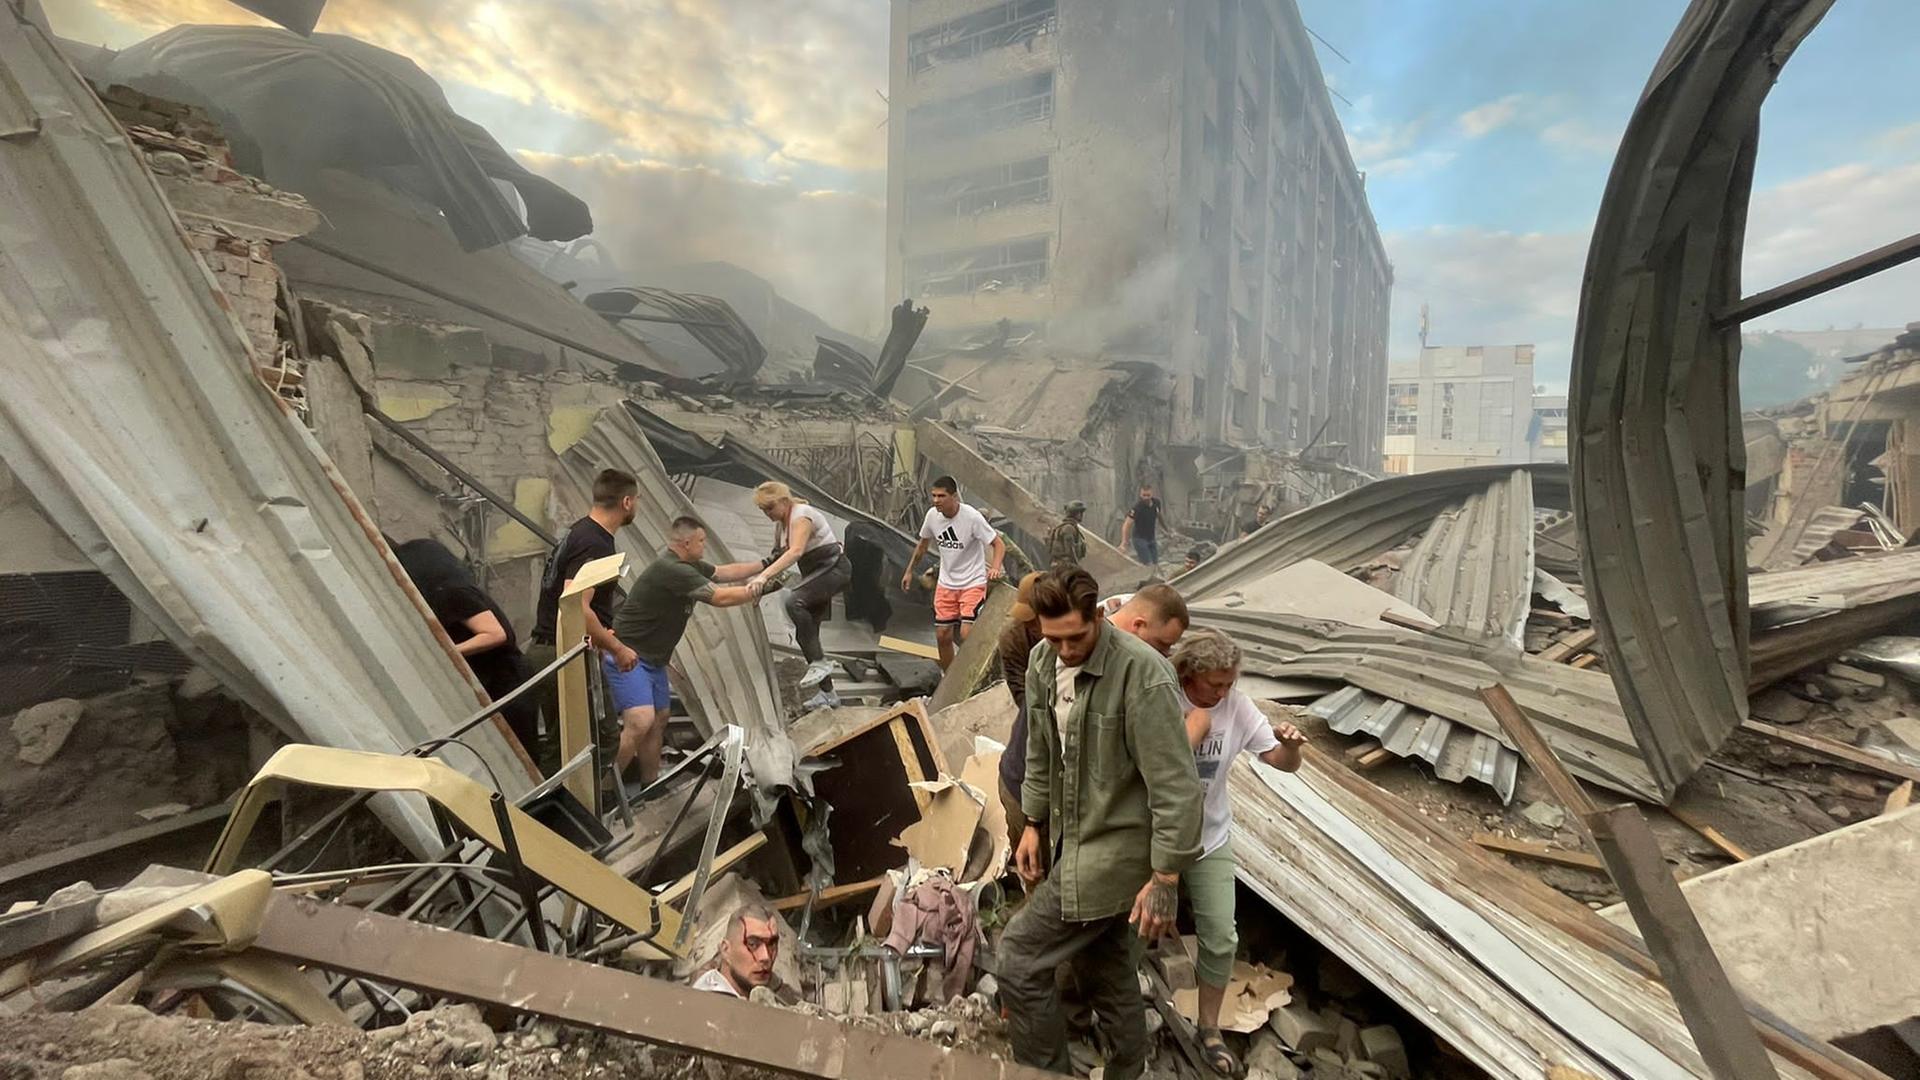 Such- und Rettungsarbeiten nach einem russischen Raketenangriff auf ein Restaurant in Kramatorsk, Ukraine, am 27. Juni 2023. Blutüberströmte Menschen suchen verzweifelt nach Überlebenden in einem Trümmerhaufen.